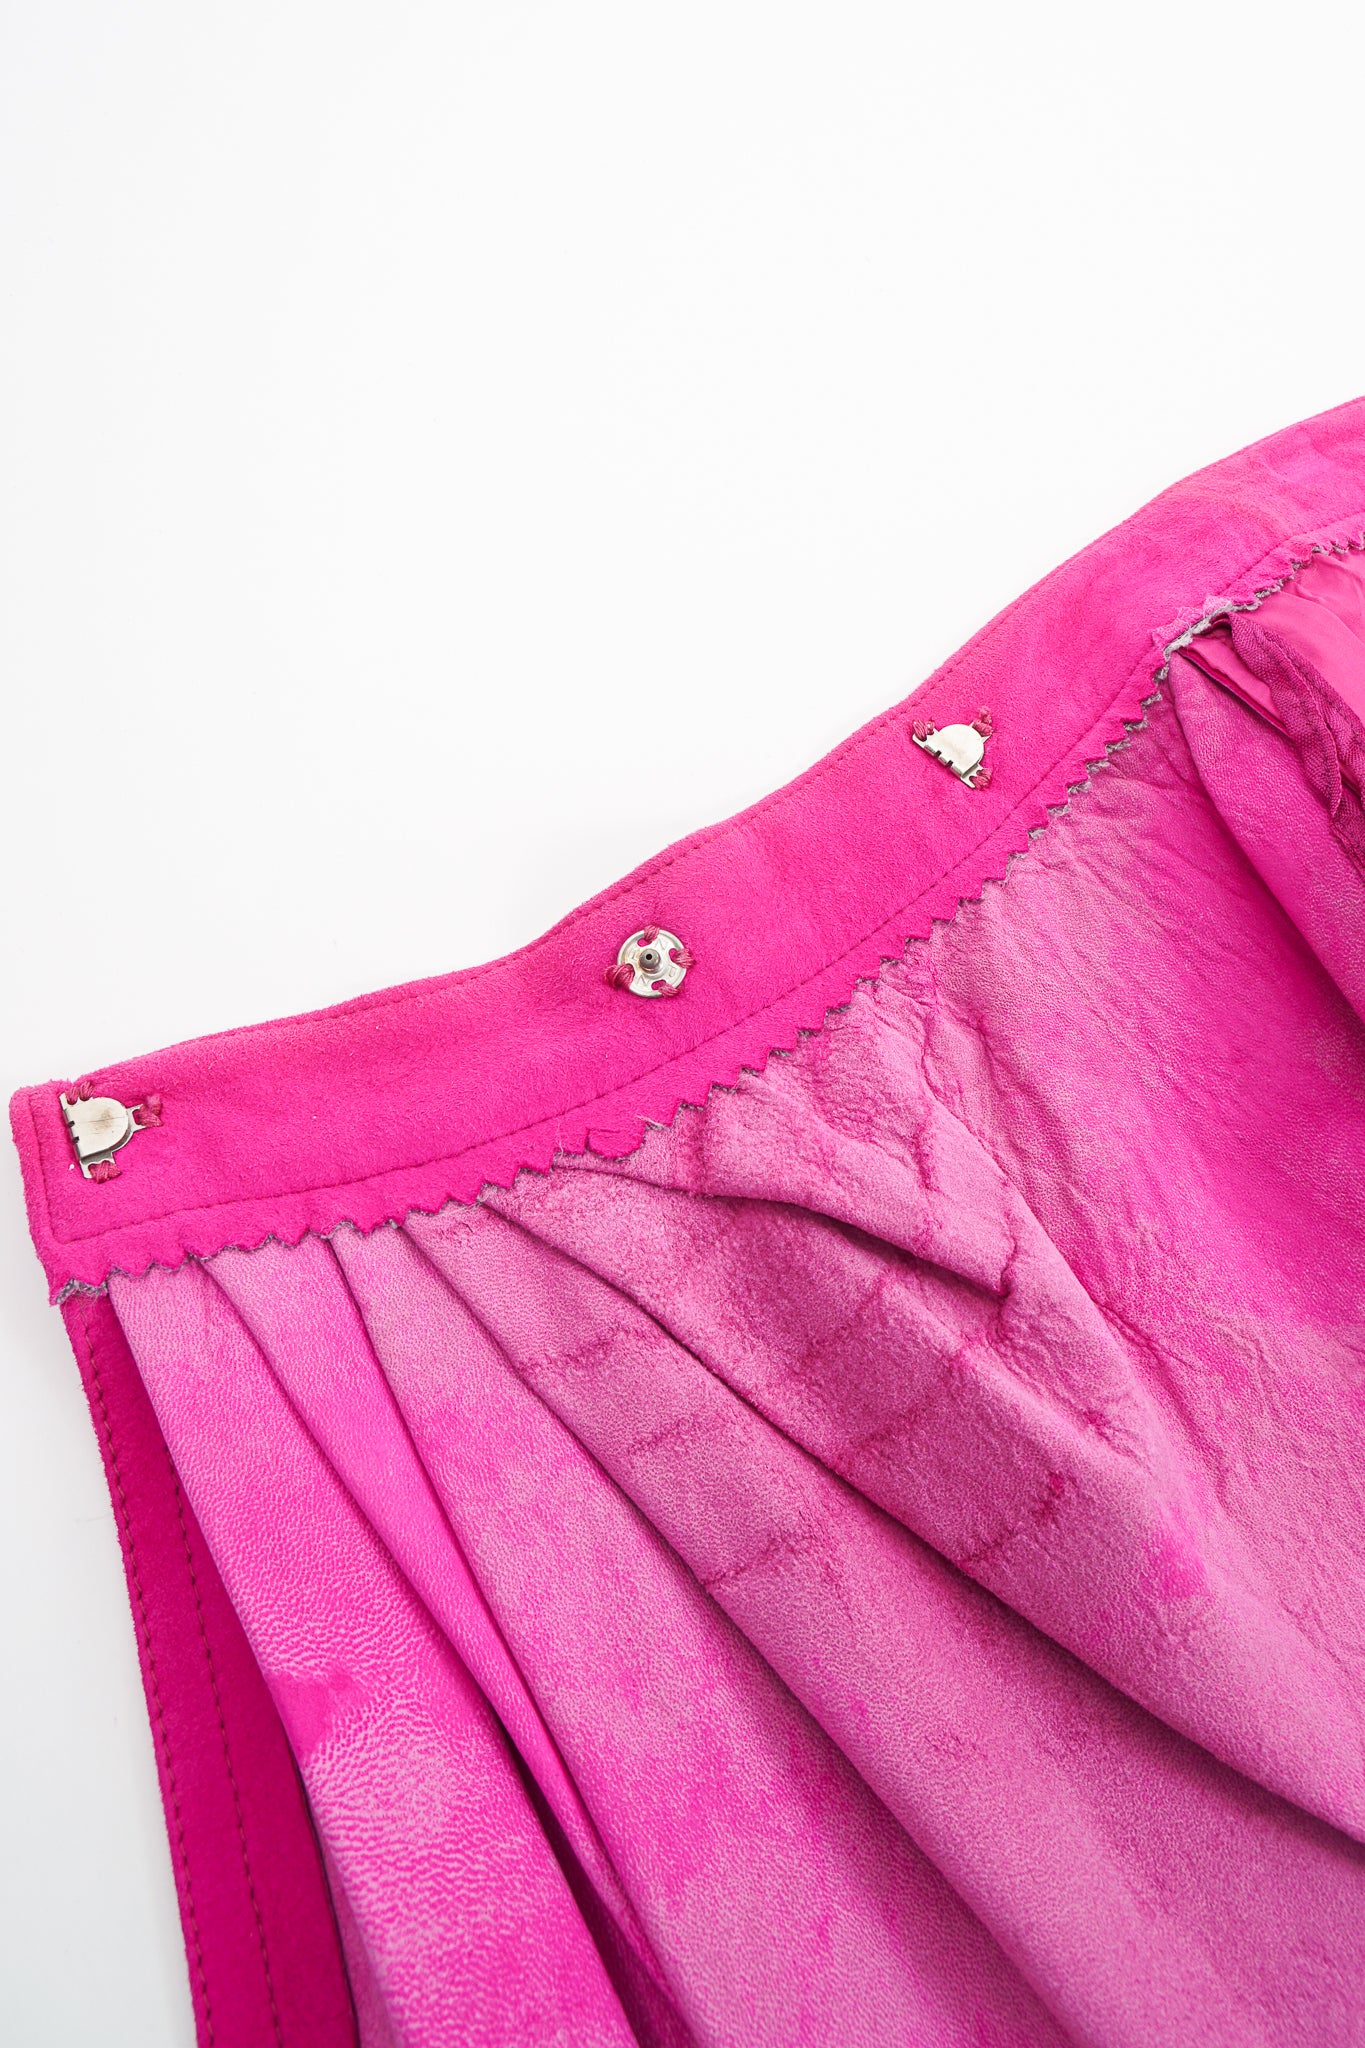 Vintage Kasper for JL Sport Hot Pink Tissue Suede Wrap Skirt closures at Recess LA